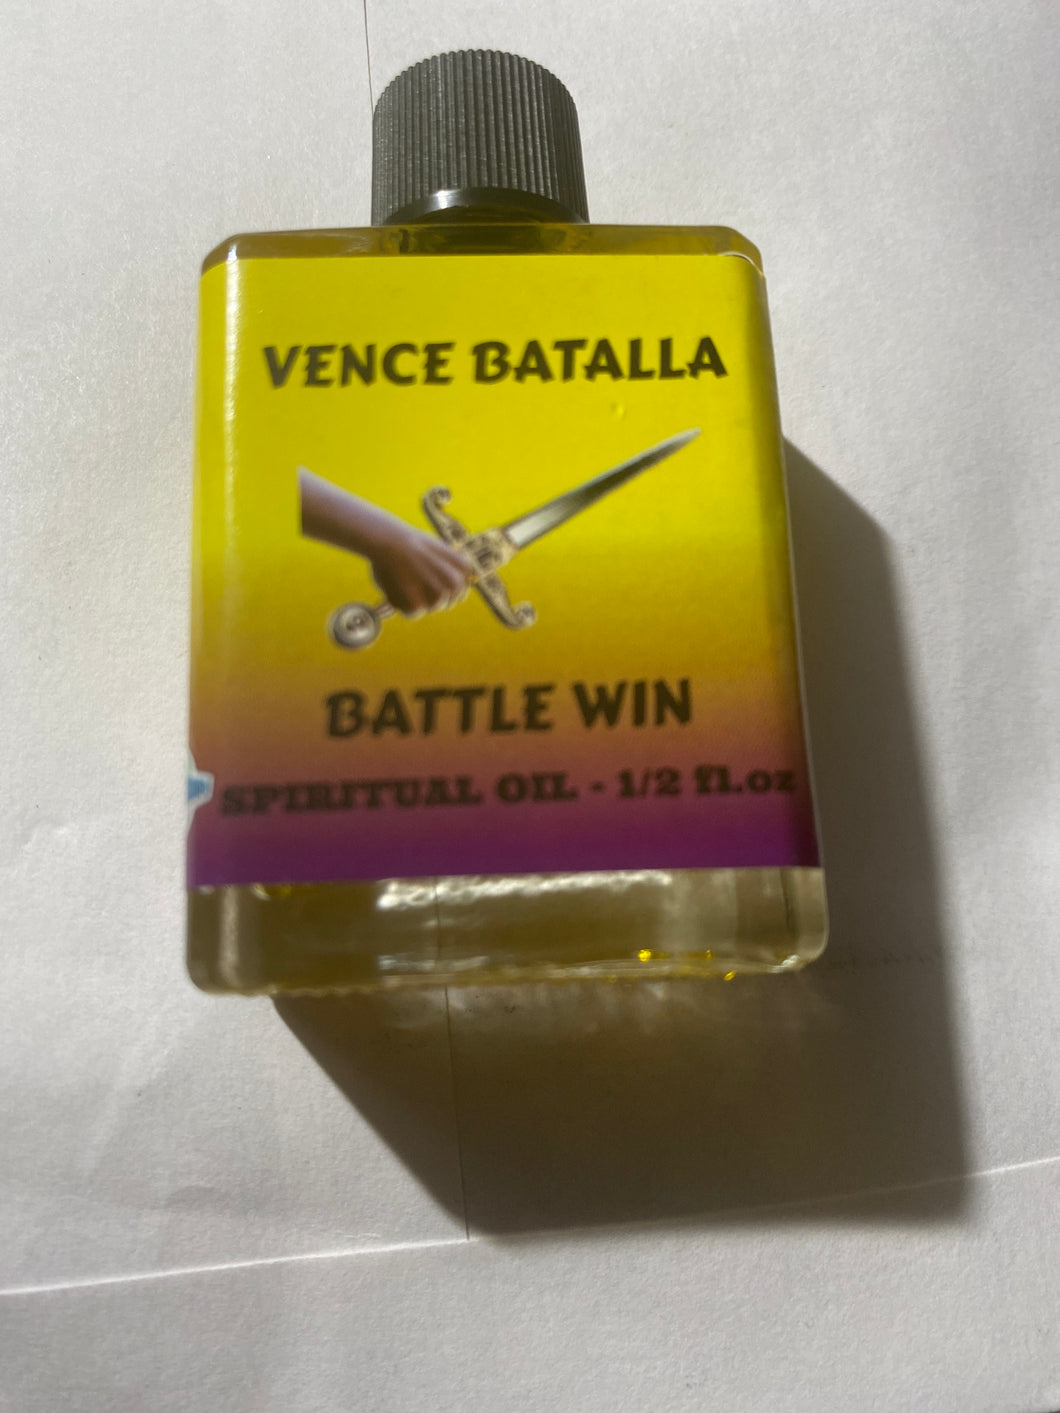 Battle win oil